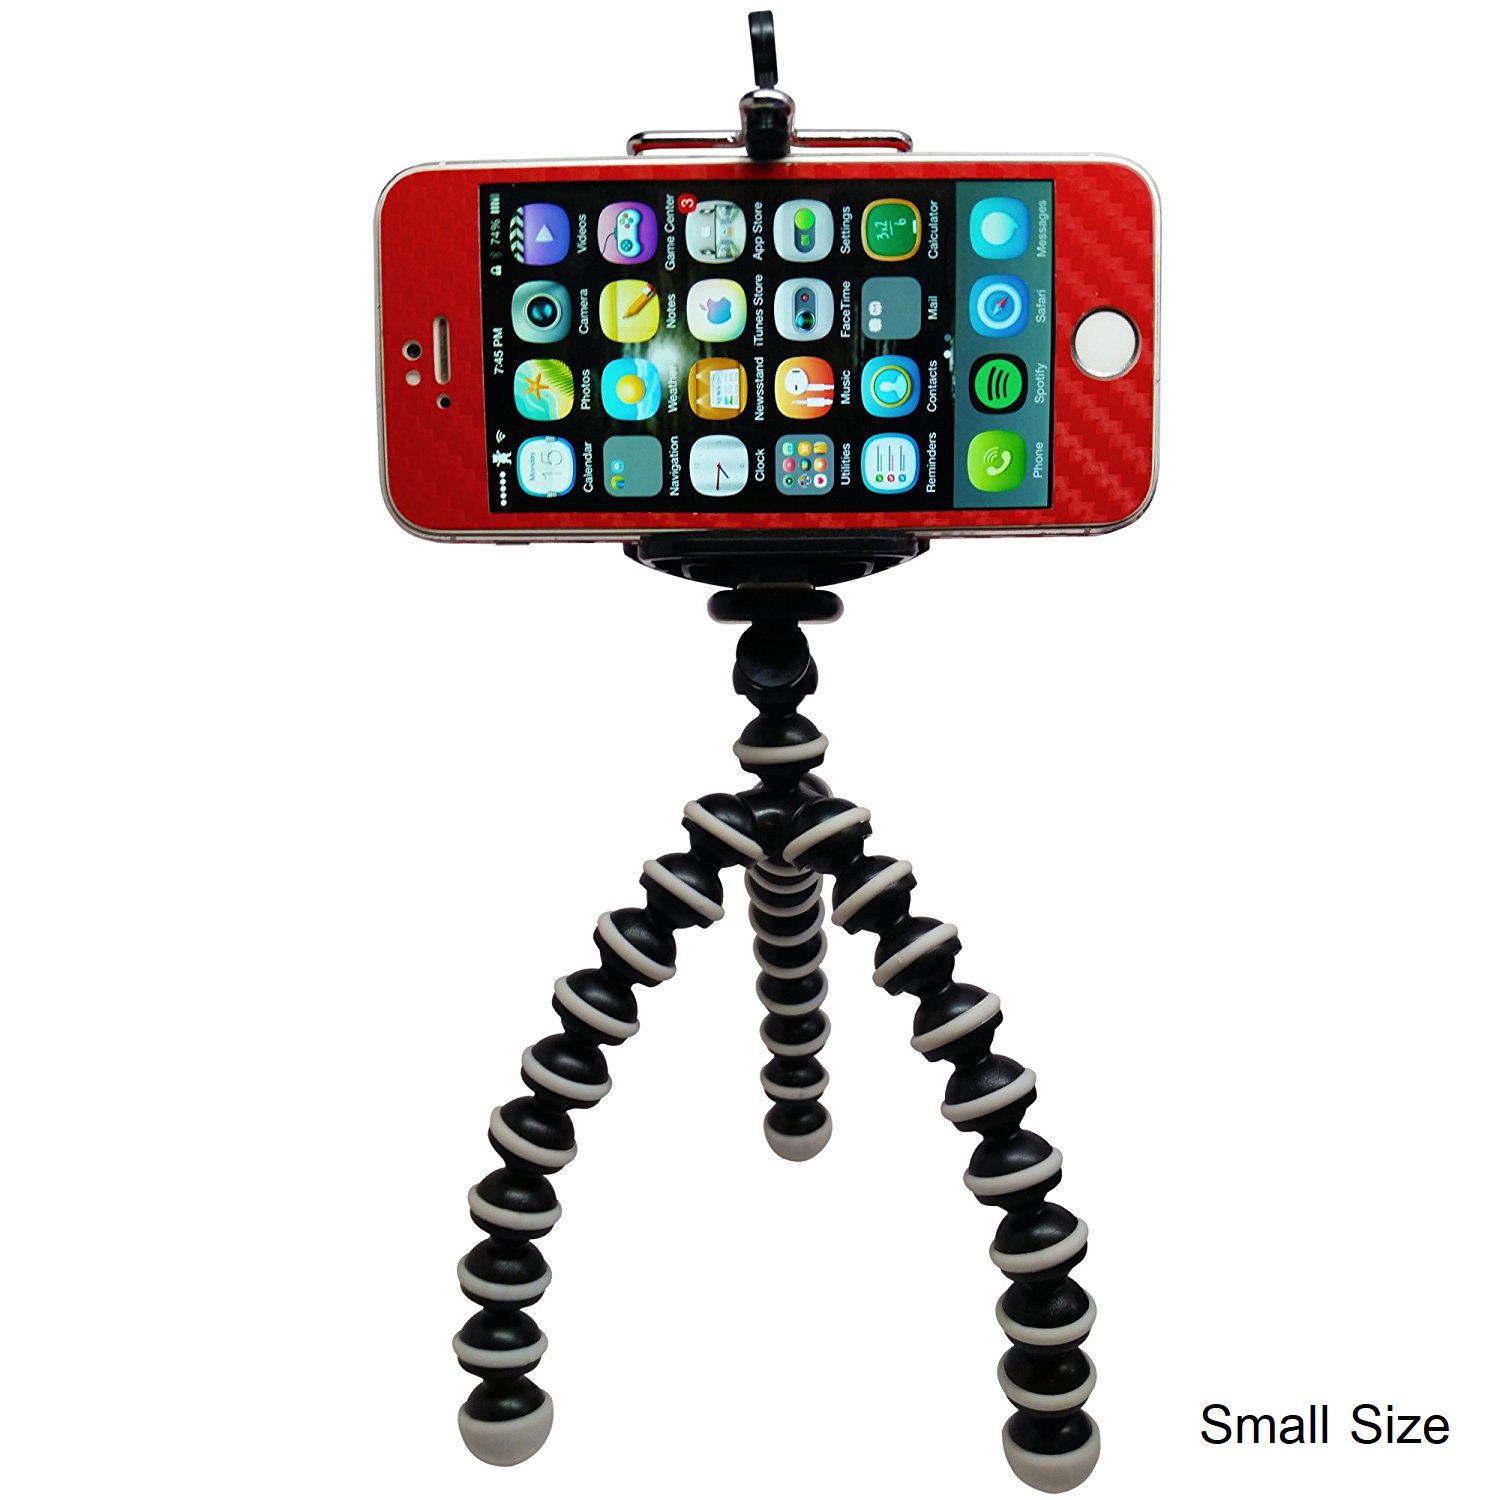 ขาตั้งกล้อง Flexible Mini Octopus Stand Tripod for Camera and Mobile Phone iPhone/Samsung/HTC + ขาจับมือถือ Clip Bracket Tripod Adapter